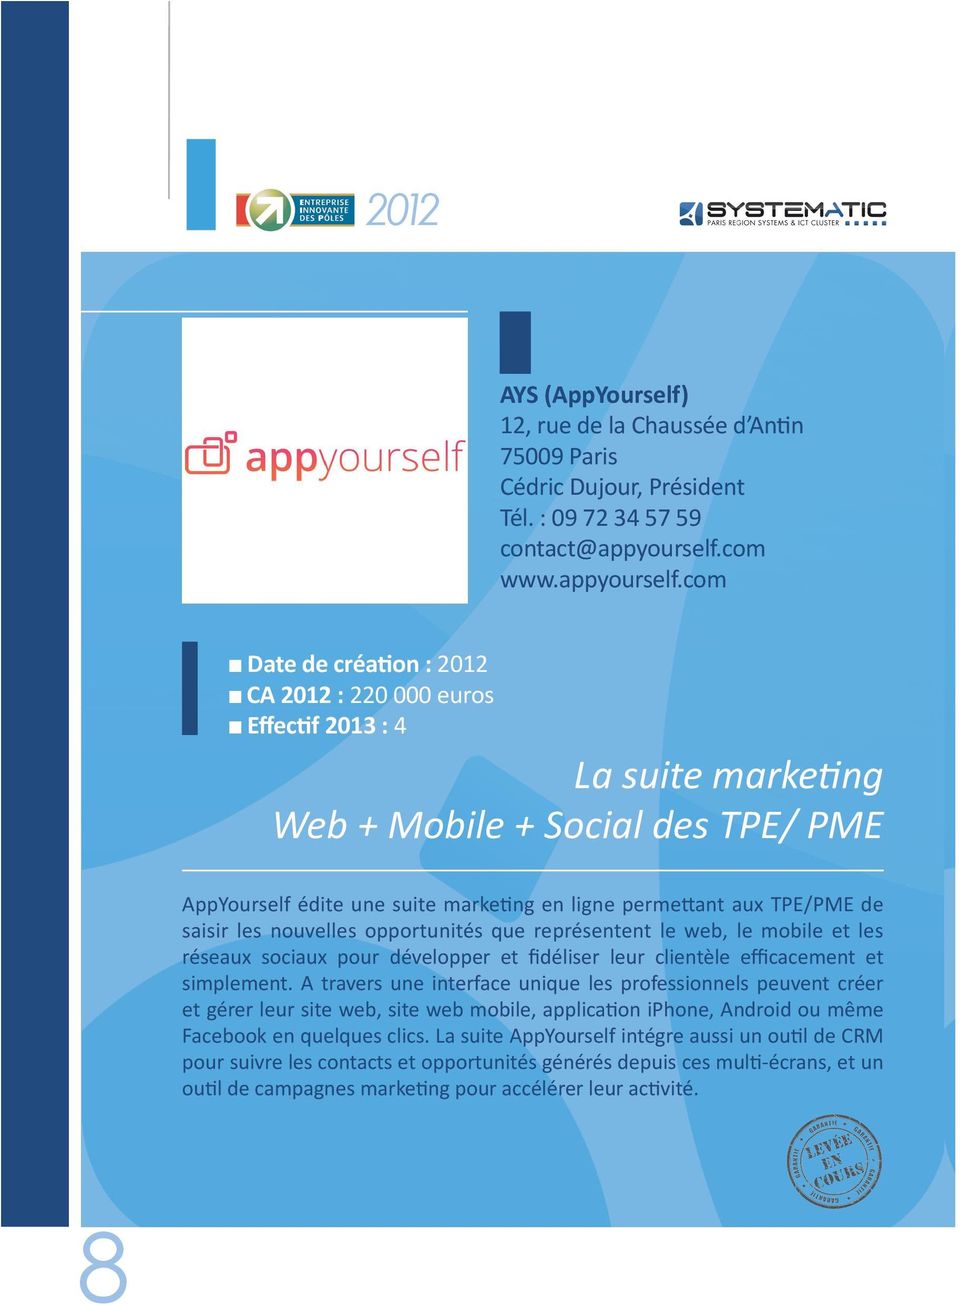 com n Date de création : 2012 n CA 2012 : 220 000 euros n Effectif 2013 : 4 La suite marketing Web + Mobile + Social des TPE/ PME AppYourself édite une suite marketing en ligne permettant aux TPE/PME